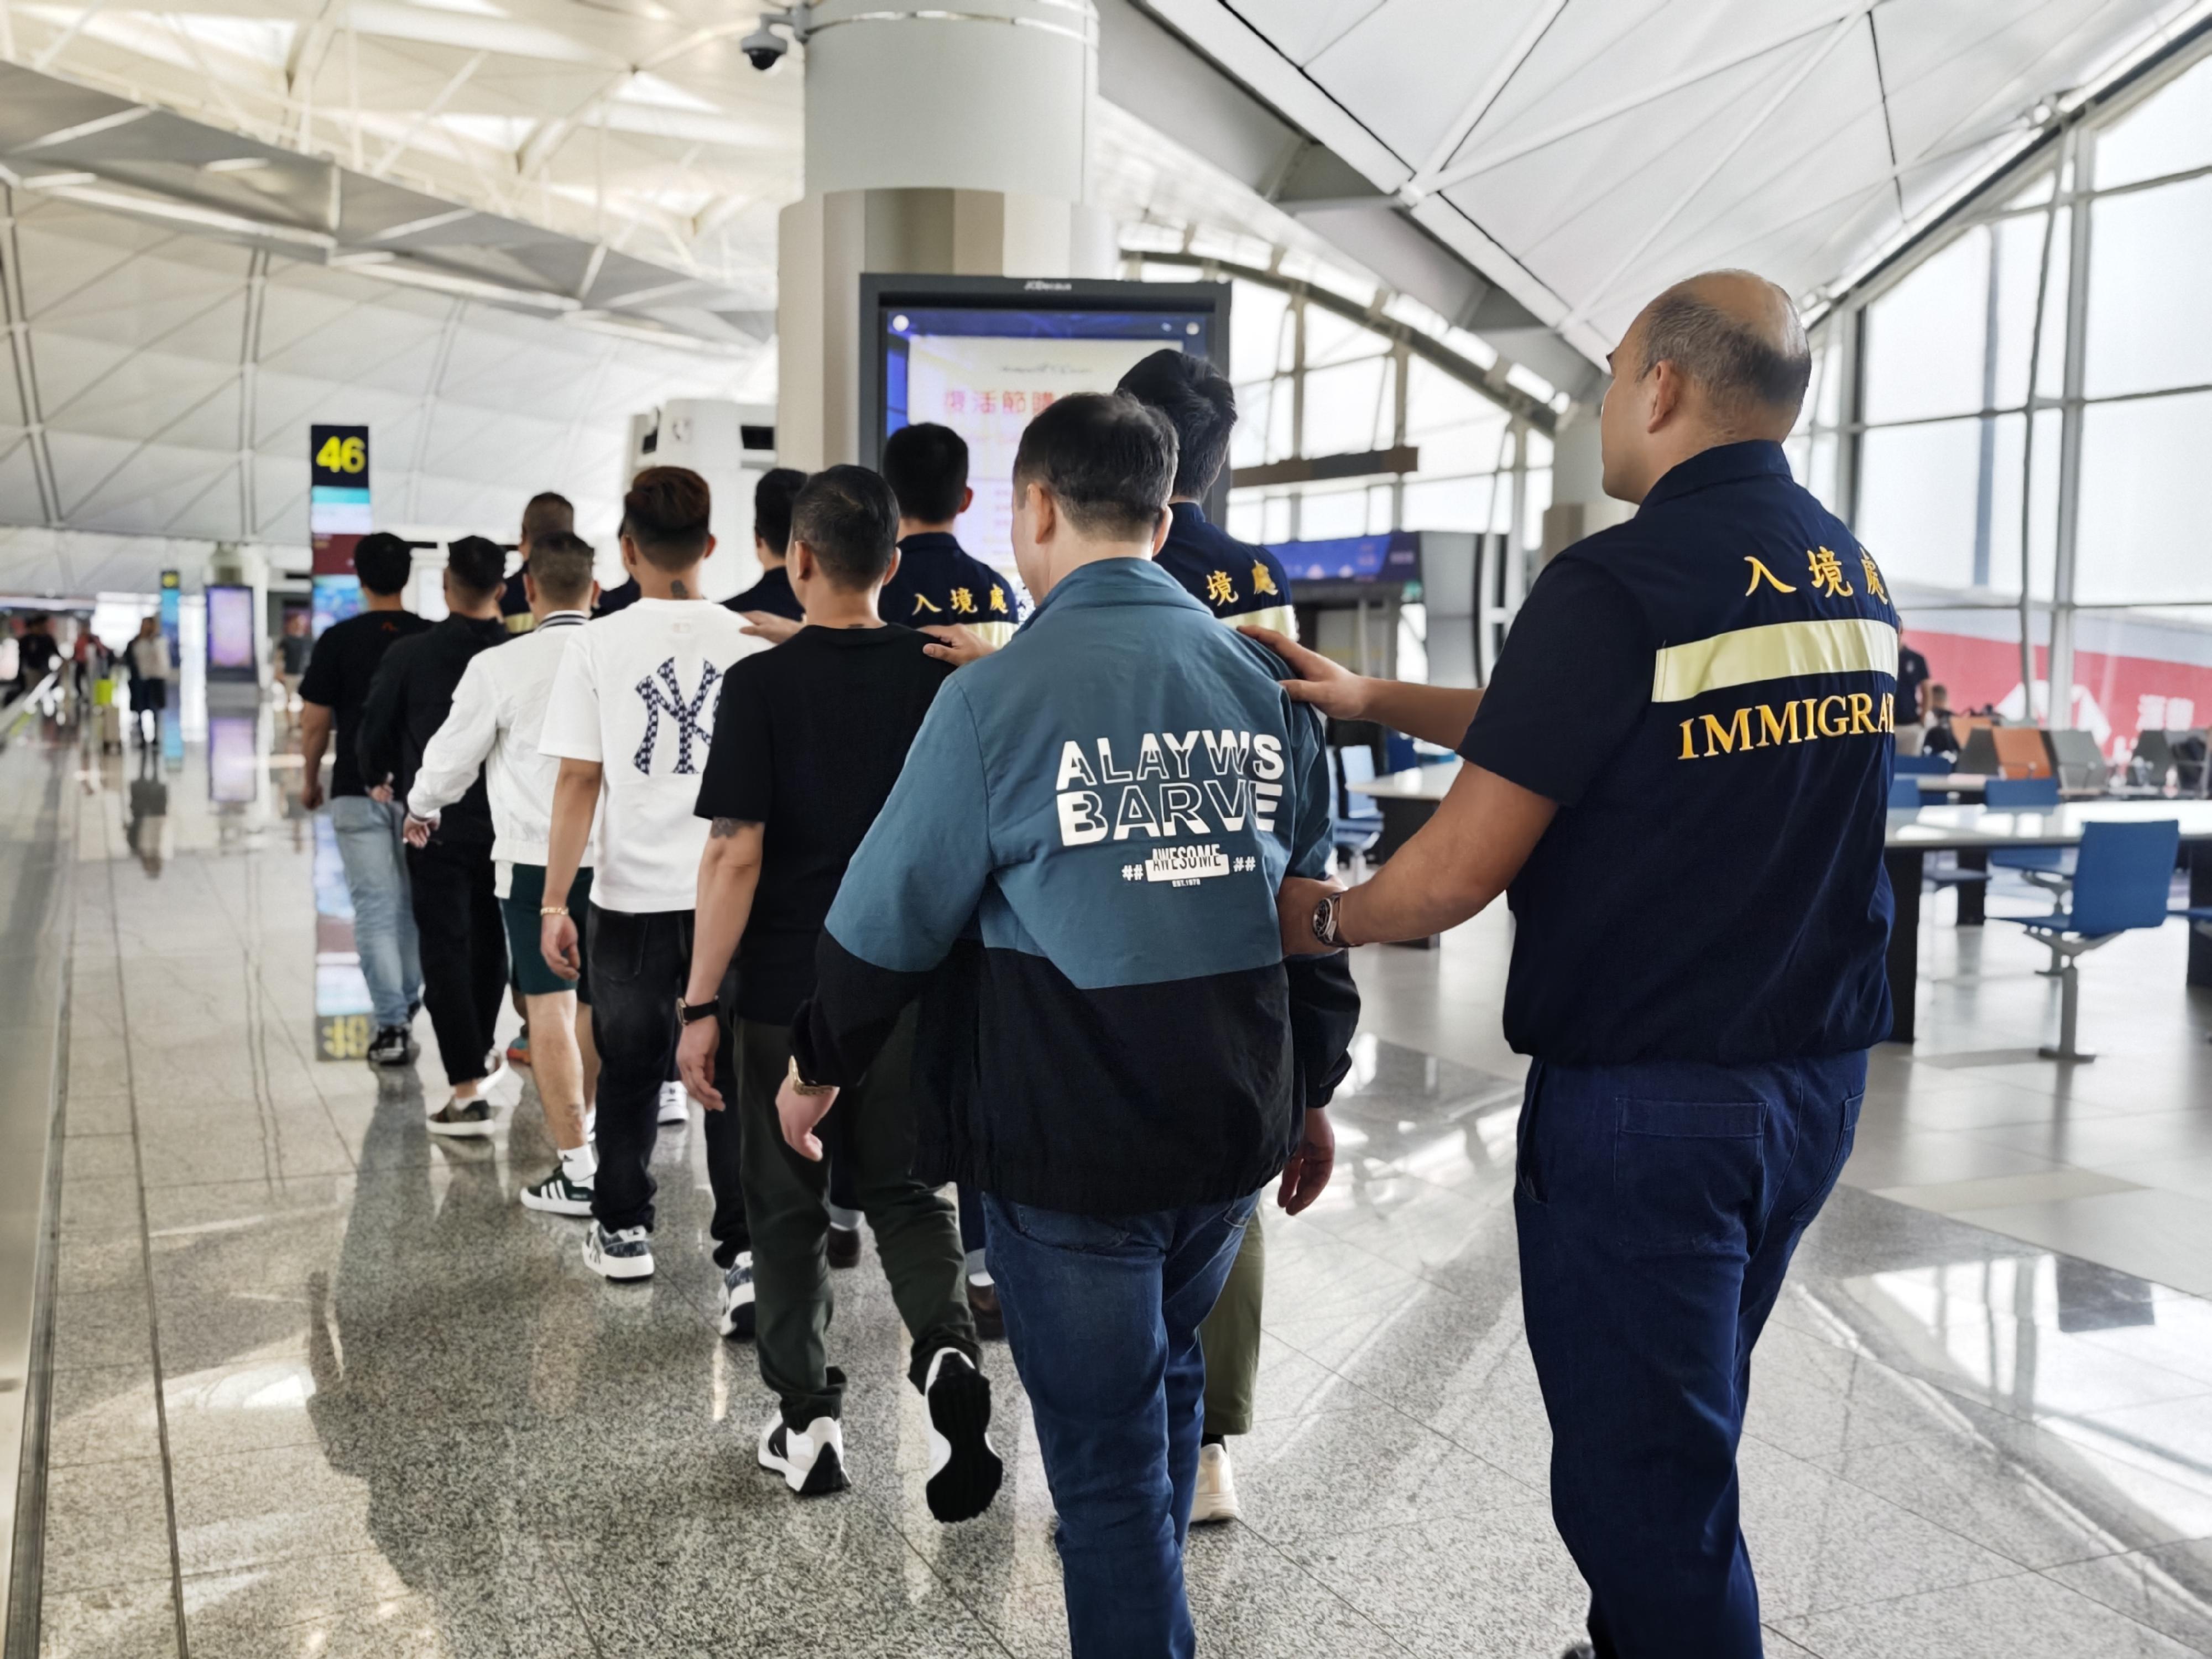 入境事务处（入境处）今日（三月二十六日）执行遣送行动，将27名越南籍非法入境者遣返越南。图示被遣返人士在入境处人员押送下离港。